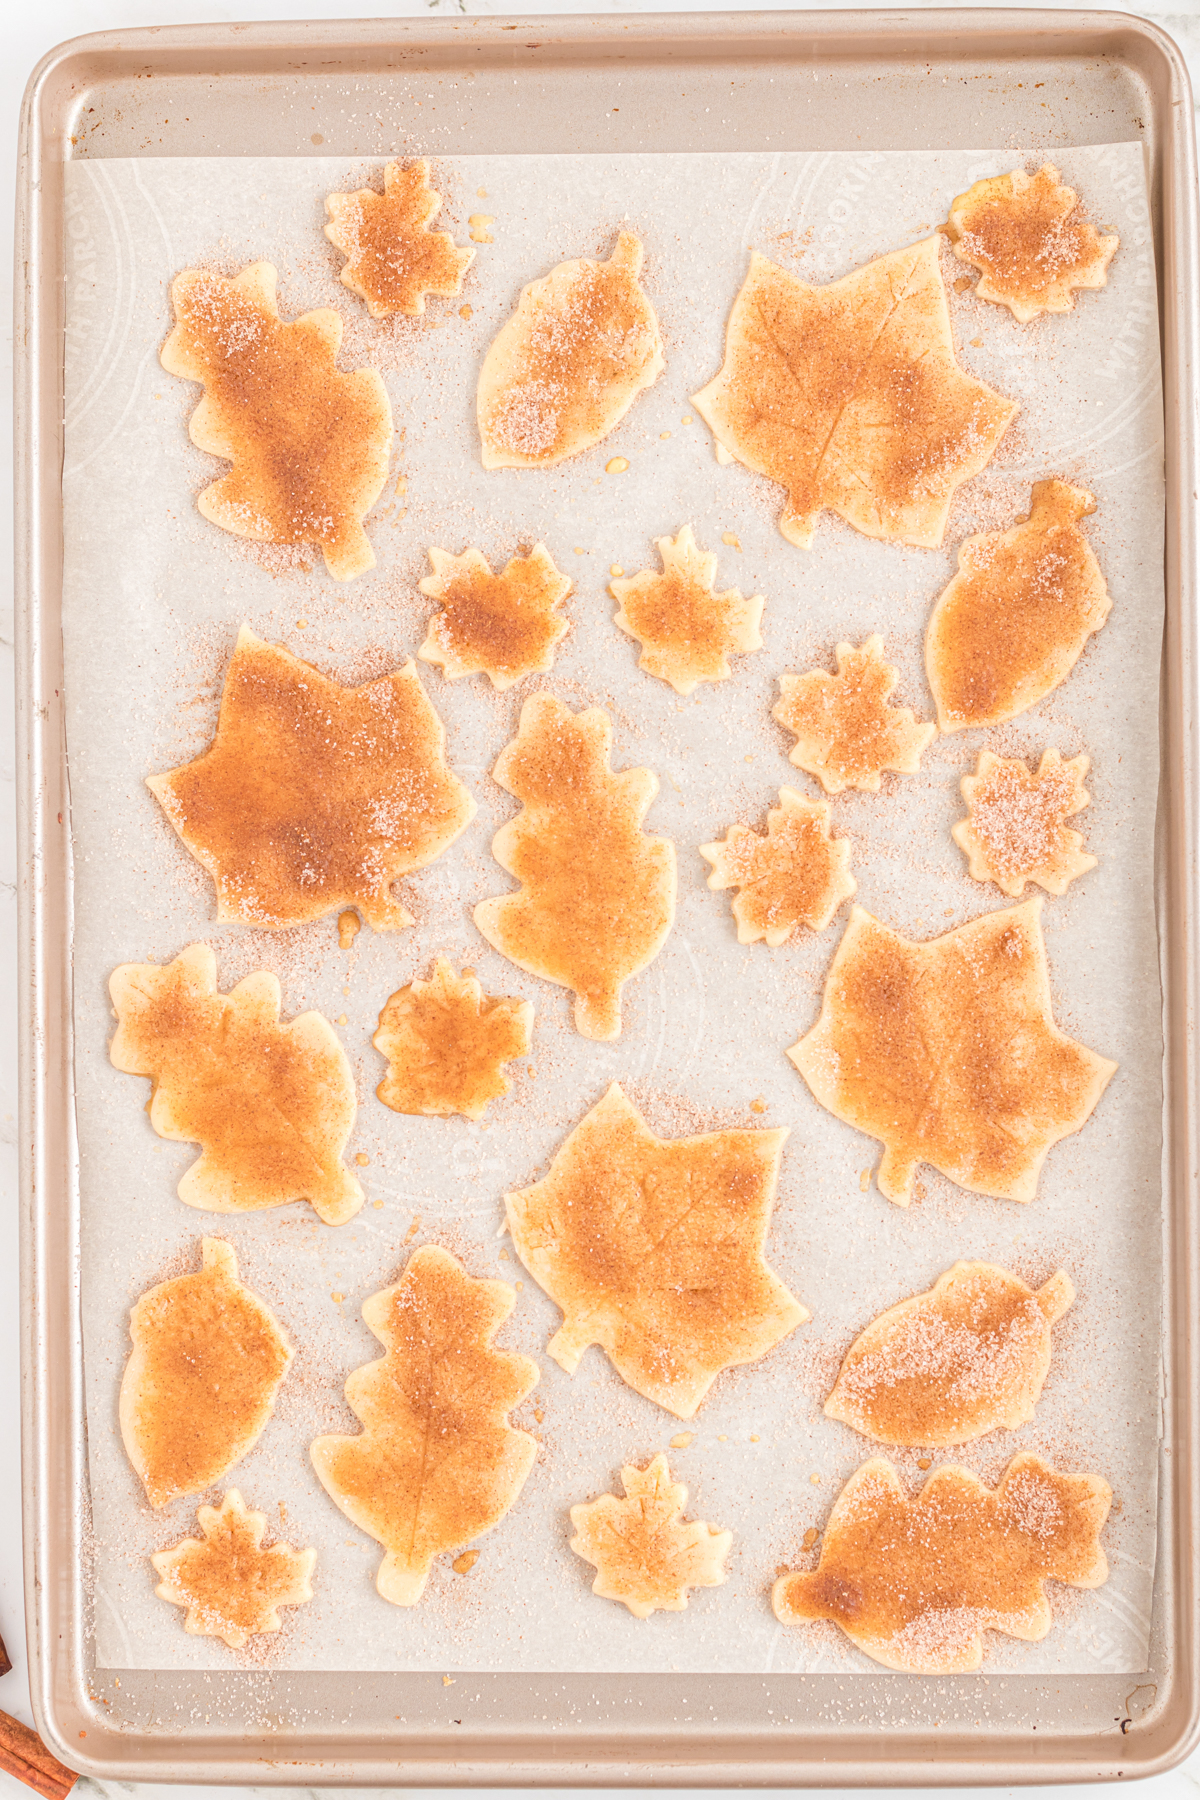 baking sheet with golden brown pie crust cookies